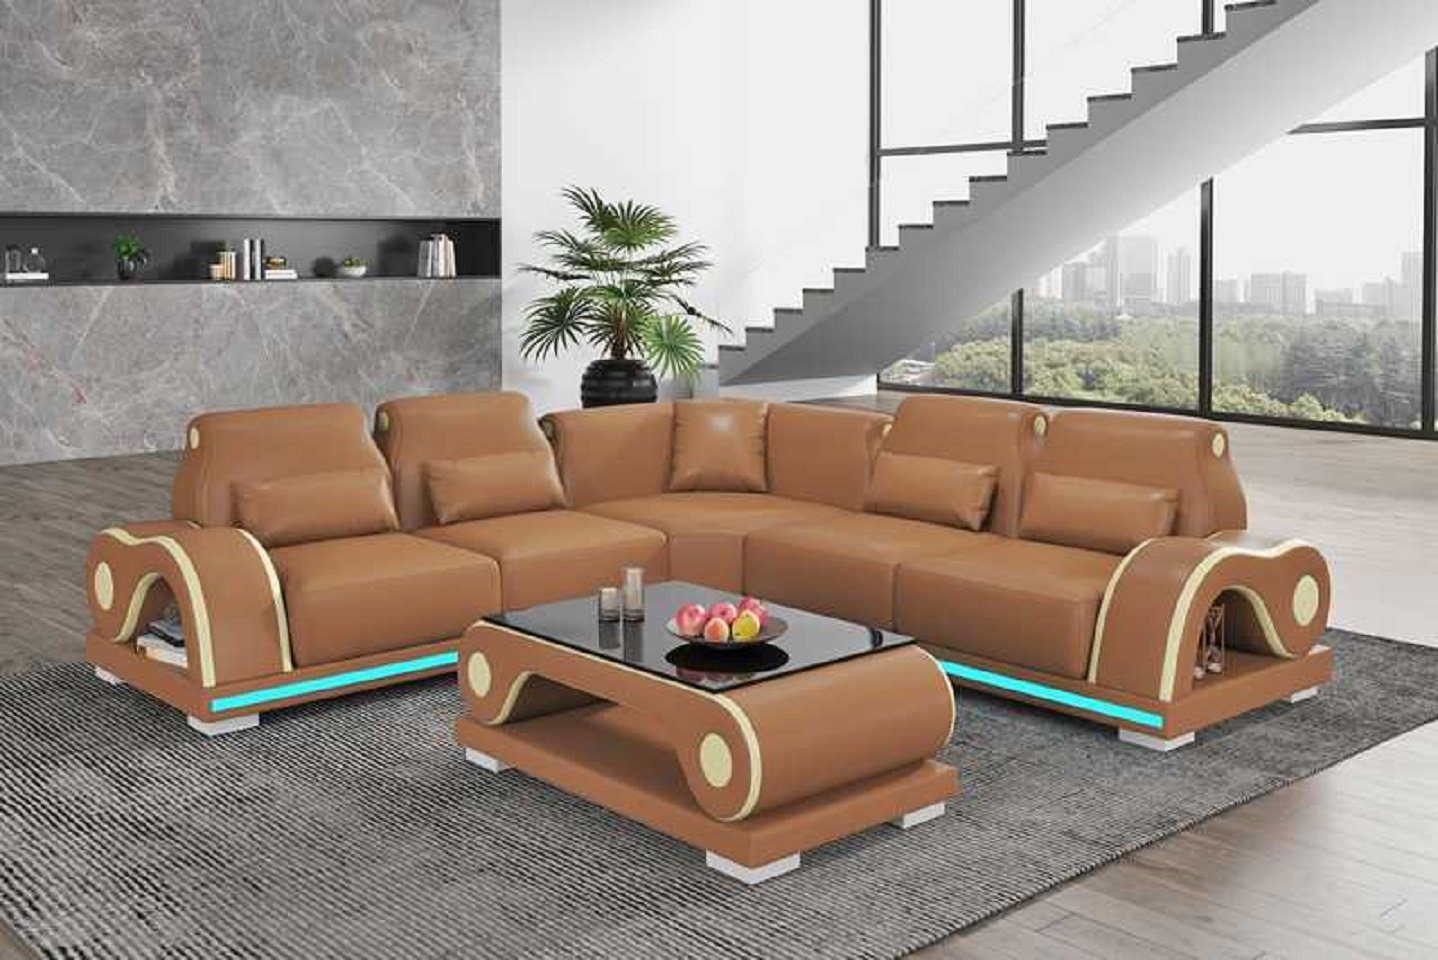 JVmoebel Ecksofa Luxus Teile, Made Braun Europe Form Moderne Ecksofa Couch in Eckgarnitur L Sofa Couchen, 3